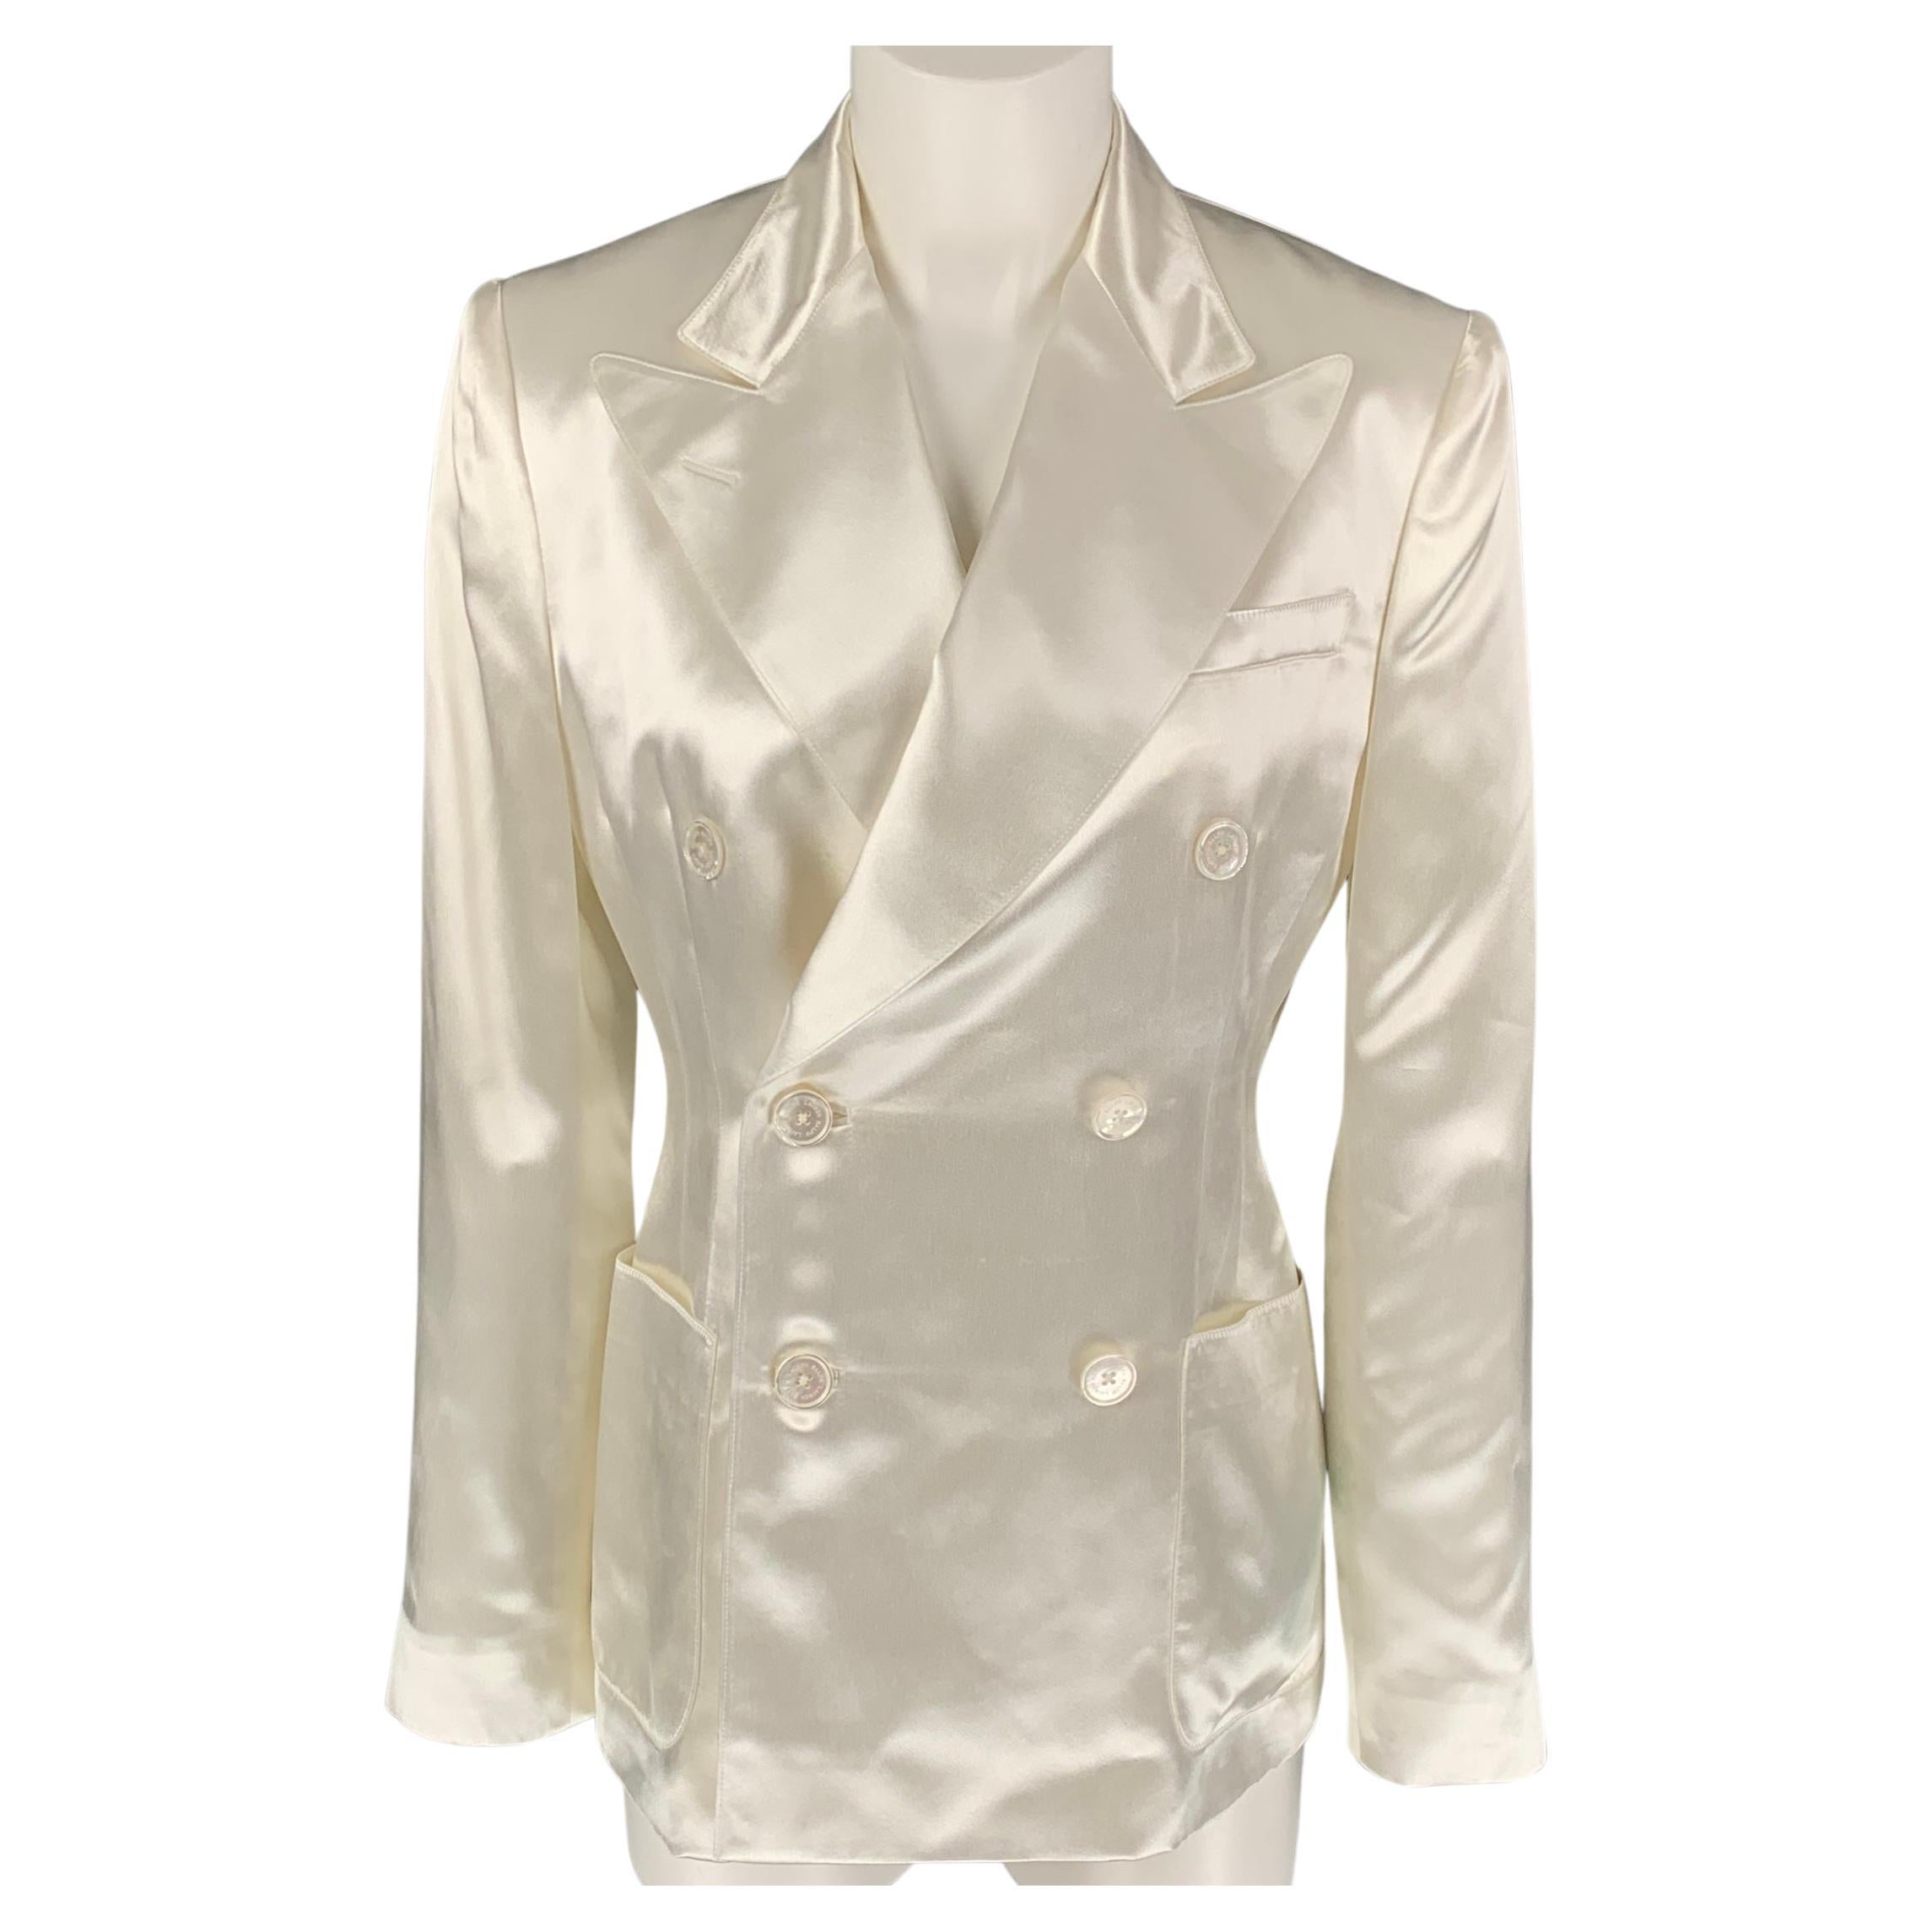 RALPH LAUREN Collection Size 6 Cream Acetate Viscose Jacket Blazer